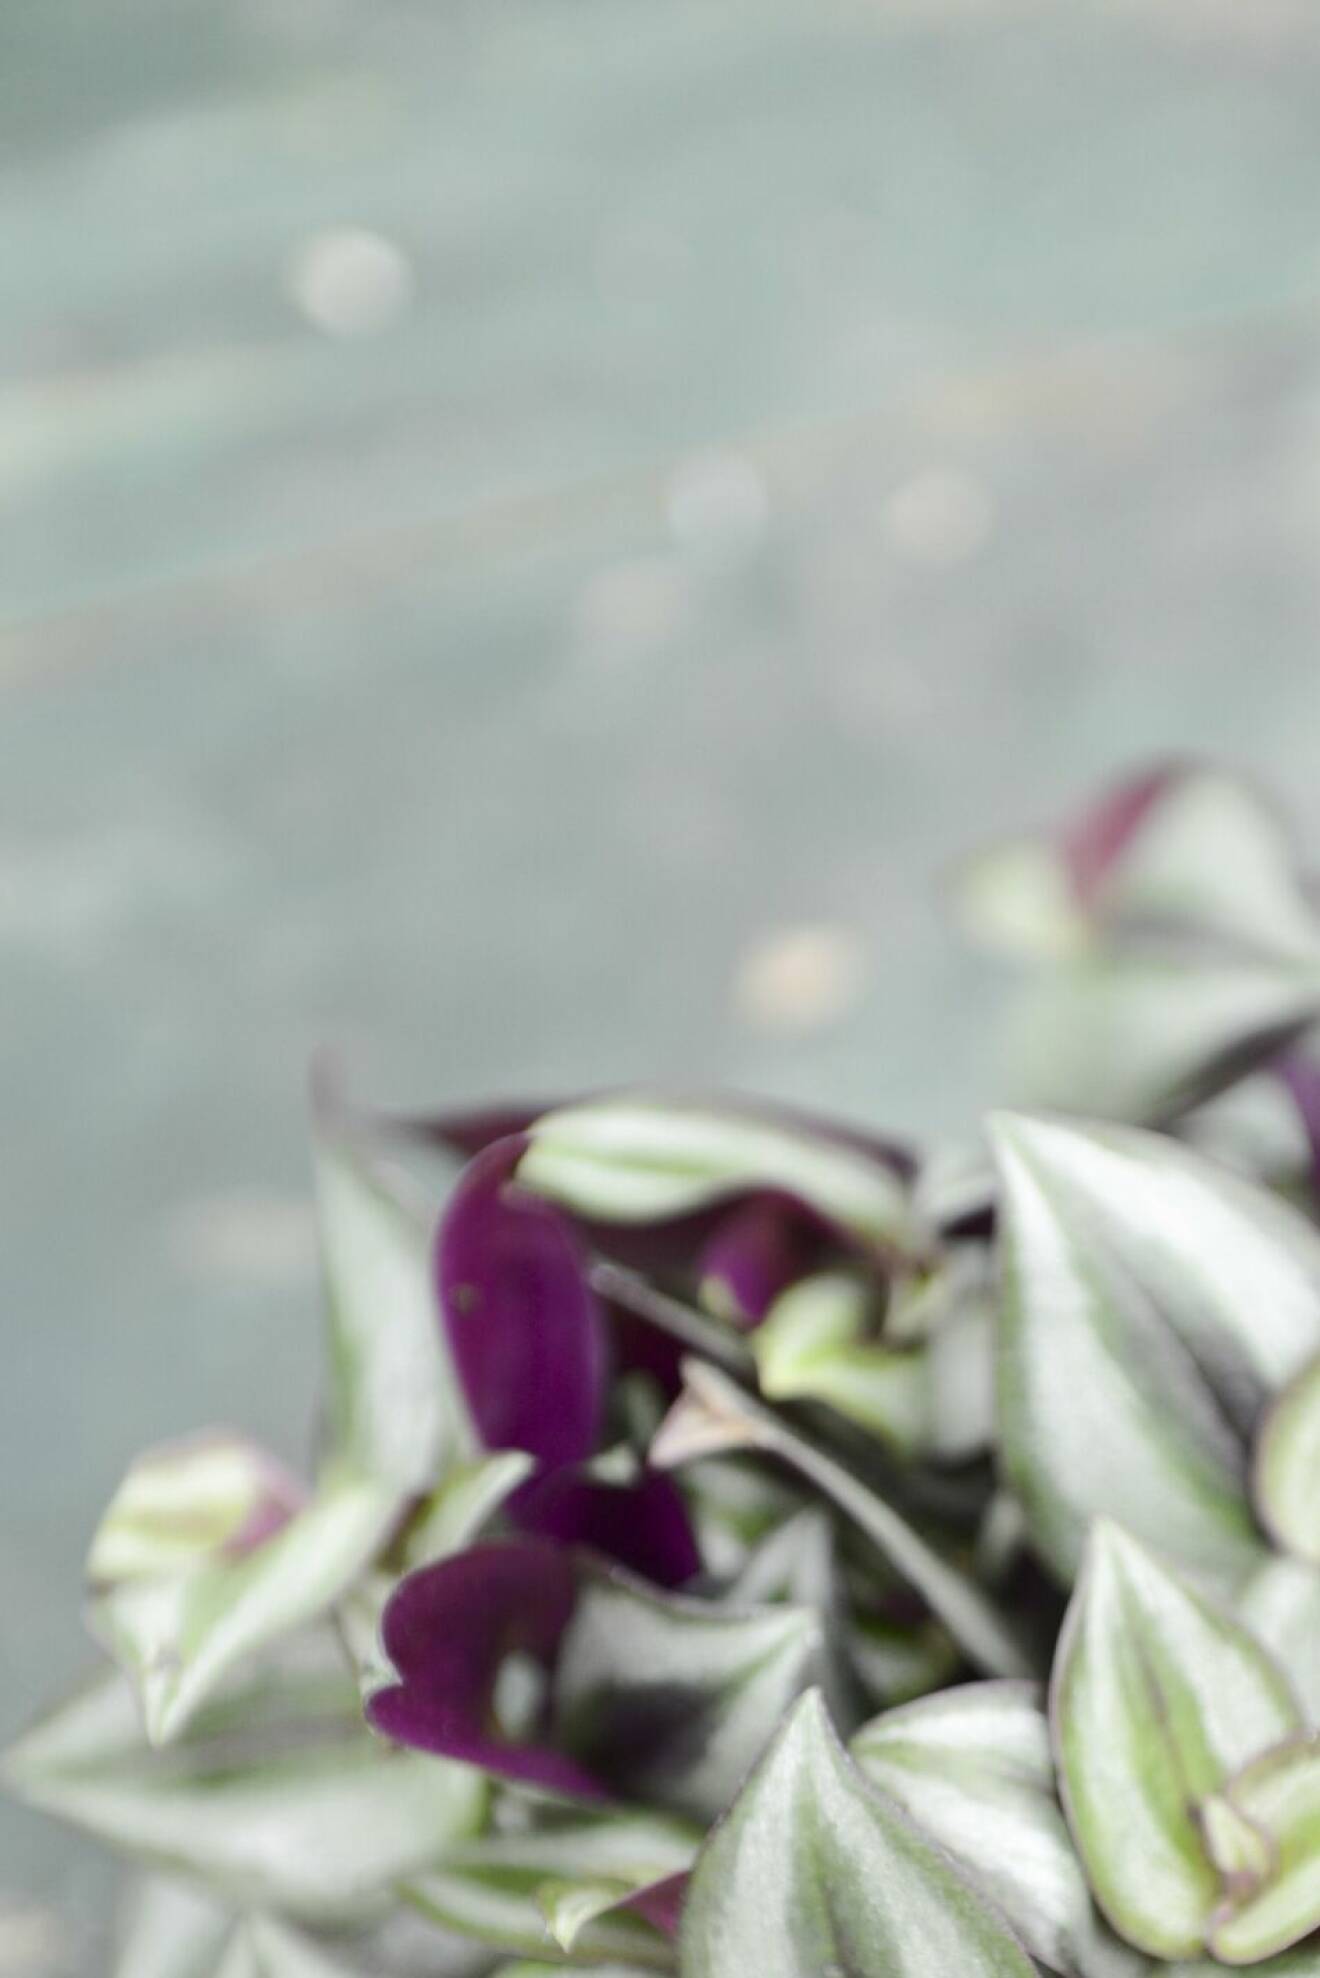 Zebrablad, Tradescantia, med skiftande blad i grönt, lila och vitt.